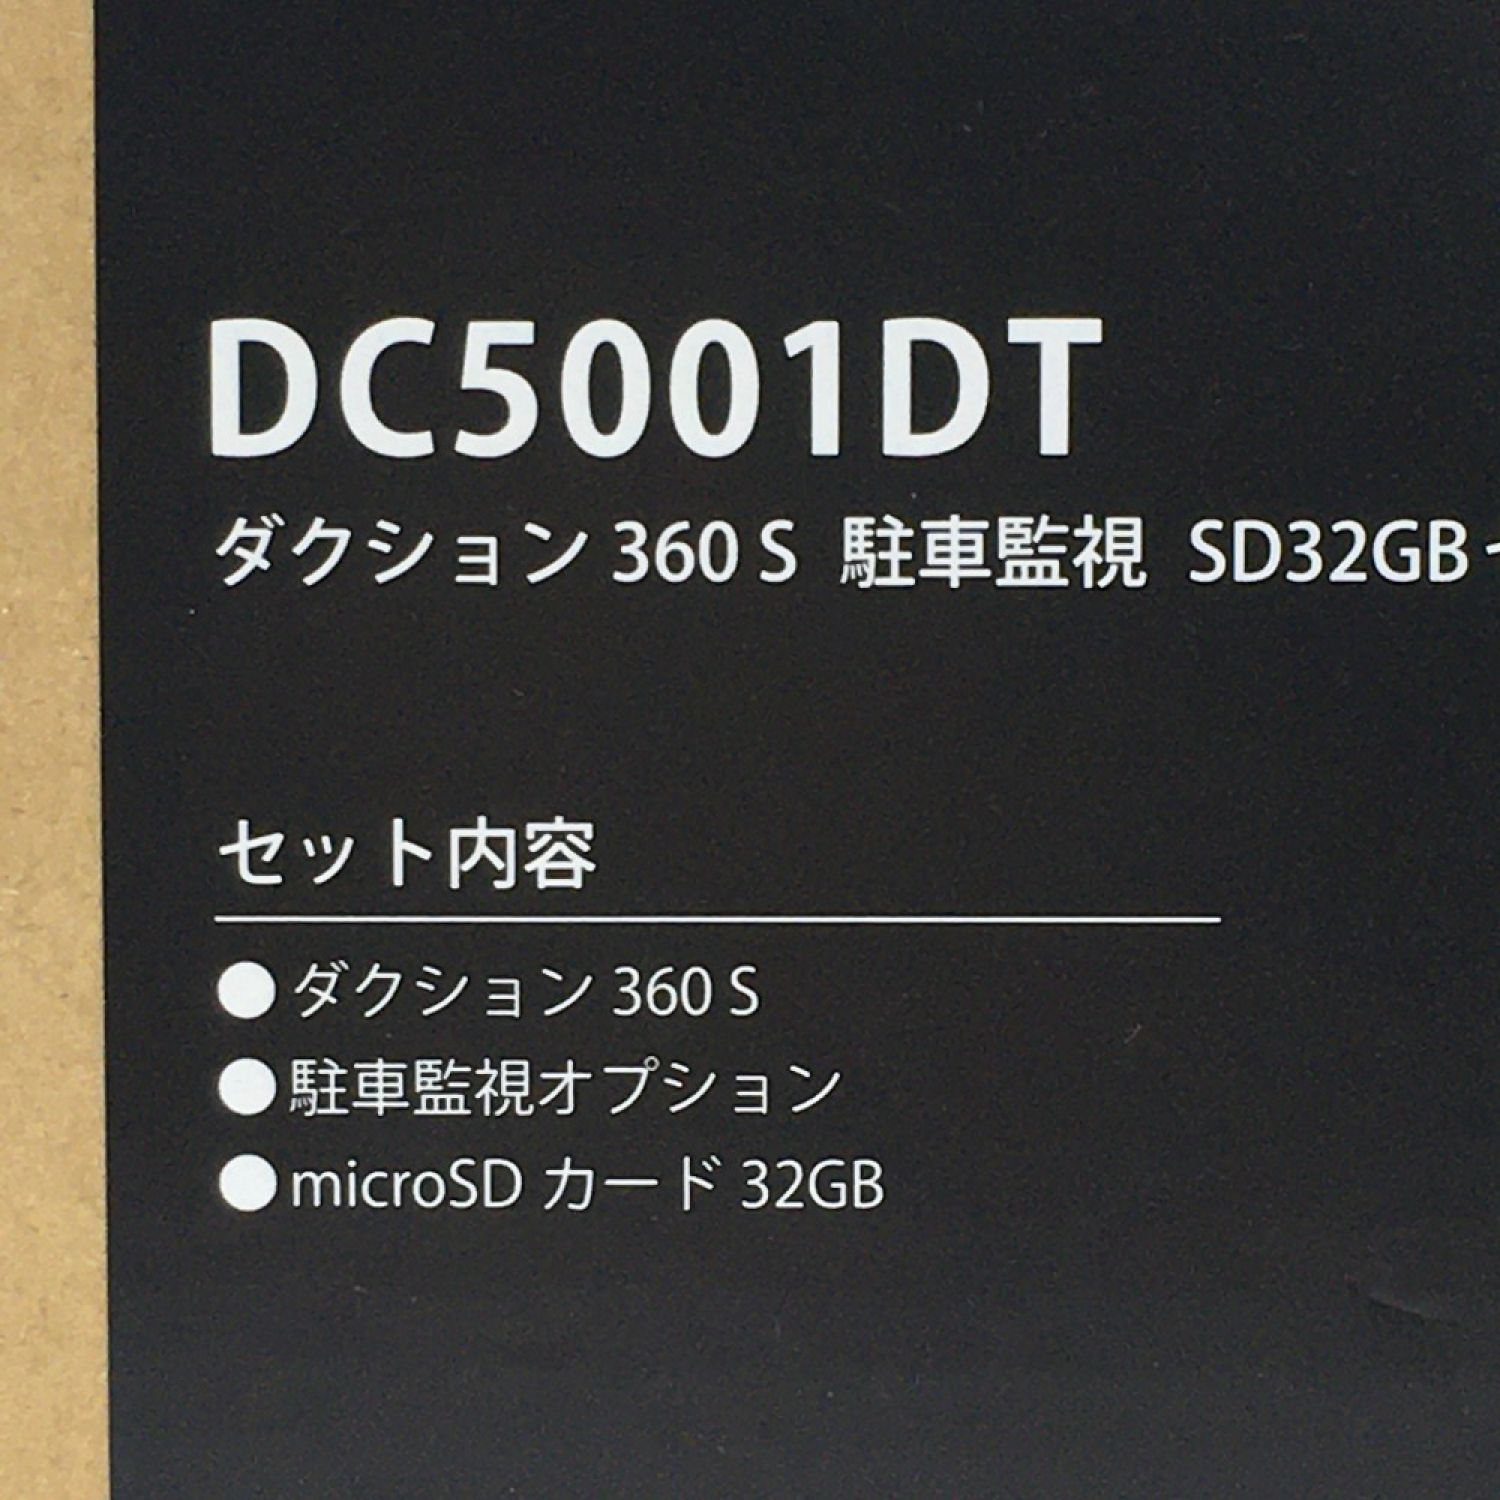 ドライブレコーダー カーメイト ダクション360S DC5001DT-T ドライブ